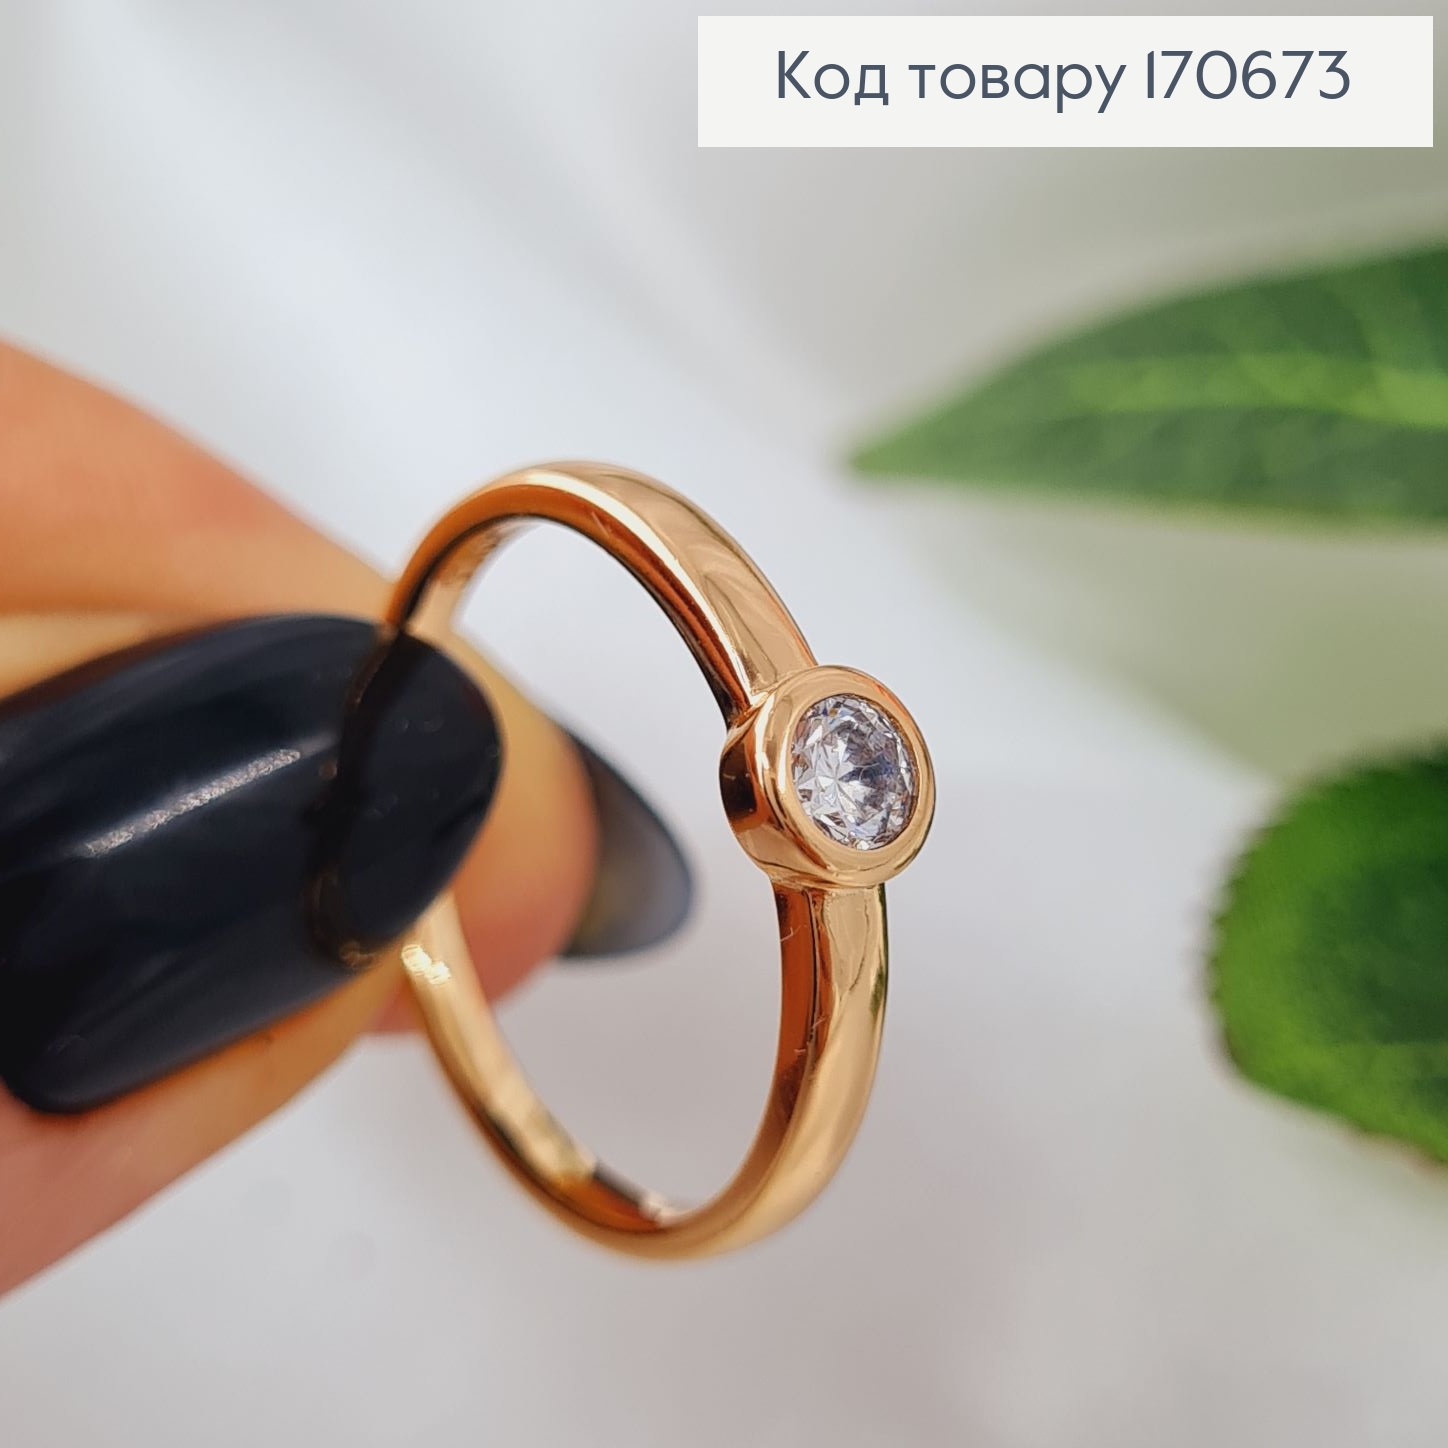 Перстень з одним камінцем в оправі, Xuping 18К 170673 фото 2